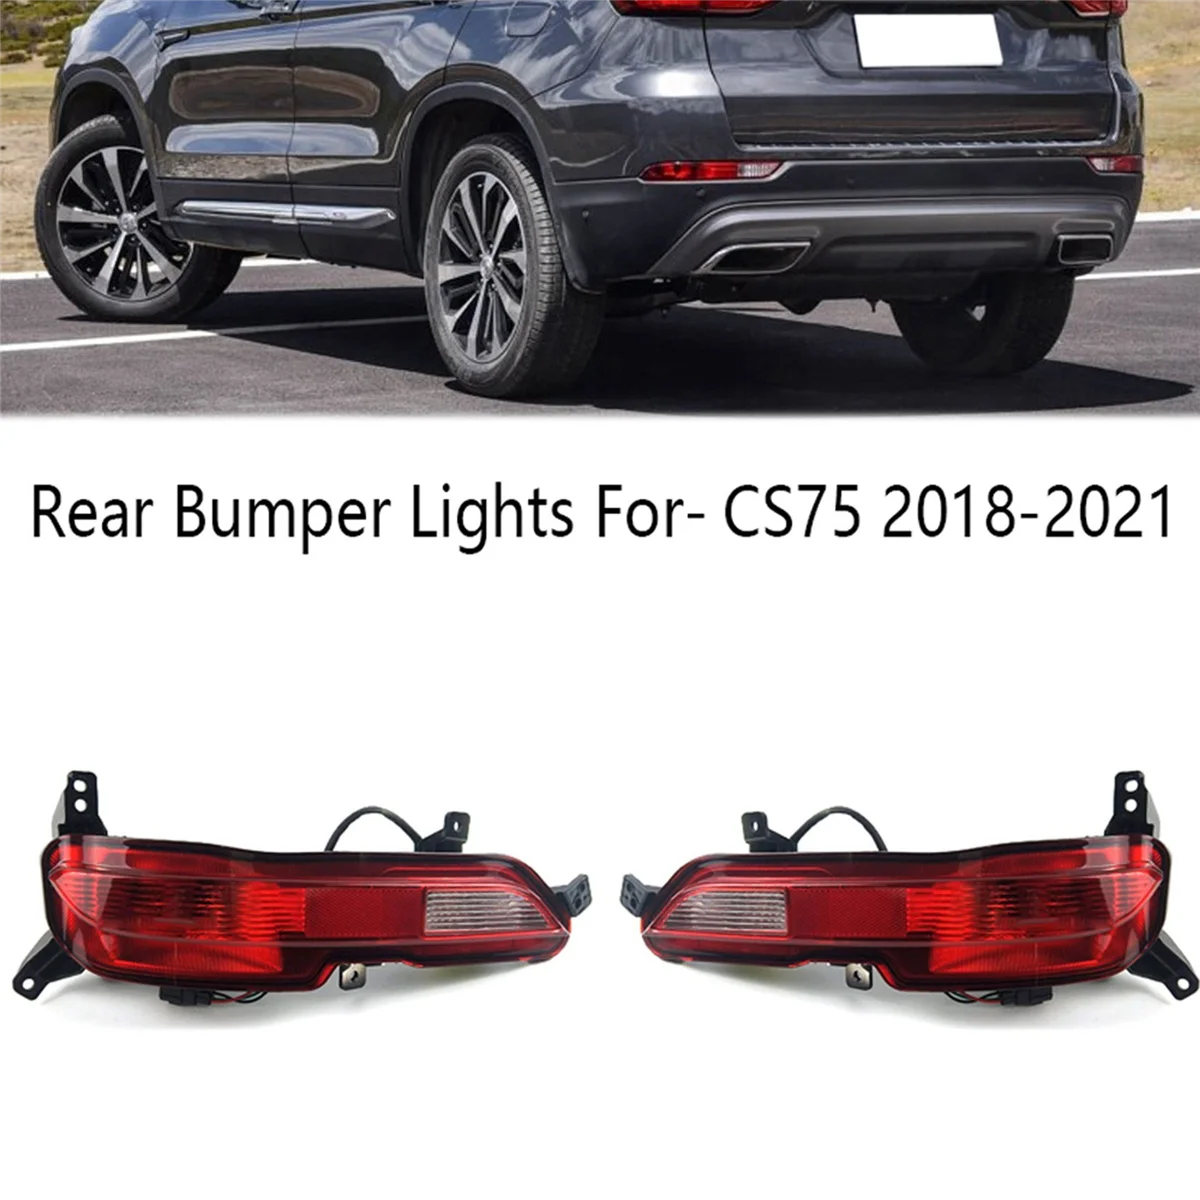 

Right Rear Bumper Lights Rear Reflector Stop Light Rear Fog Light Brake Lamp For-Changan CS75 2018-2021